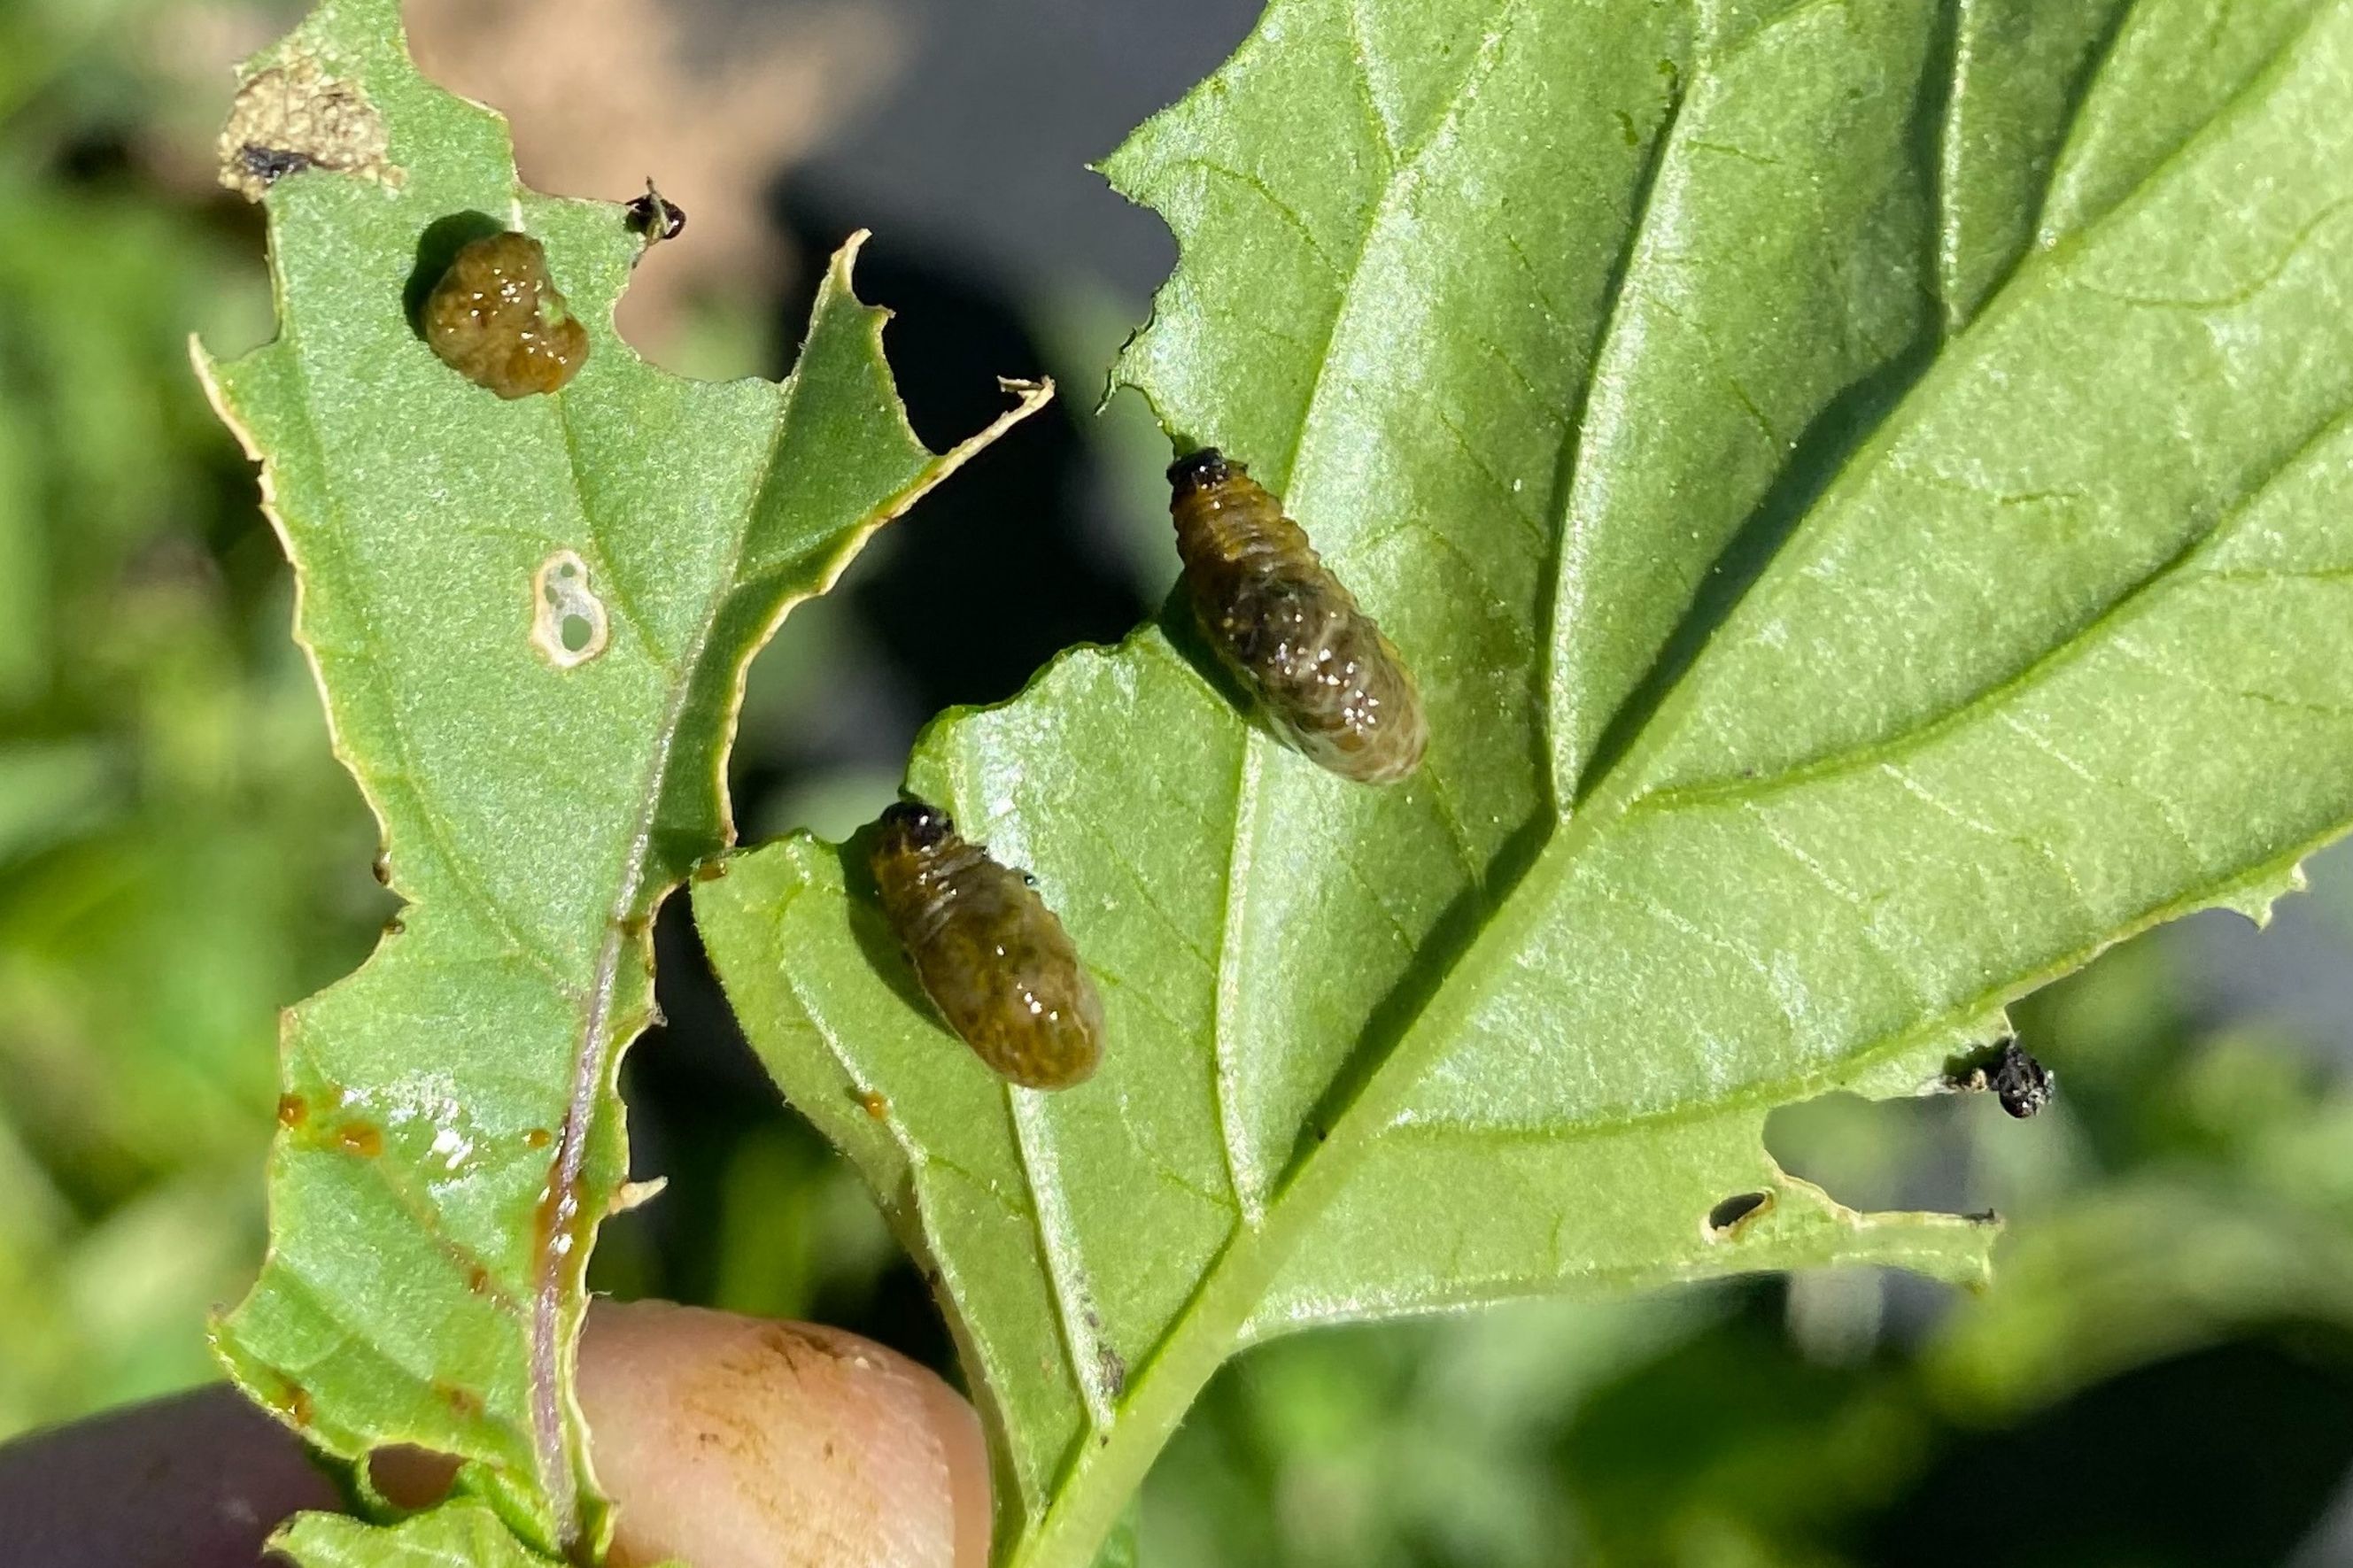 Three-Lined Potato Beetle Larva